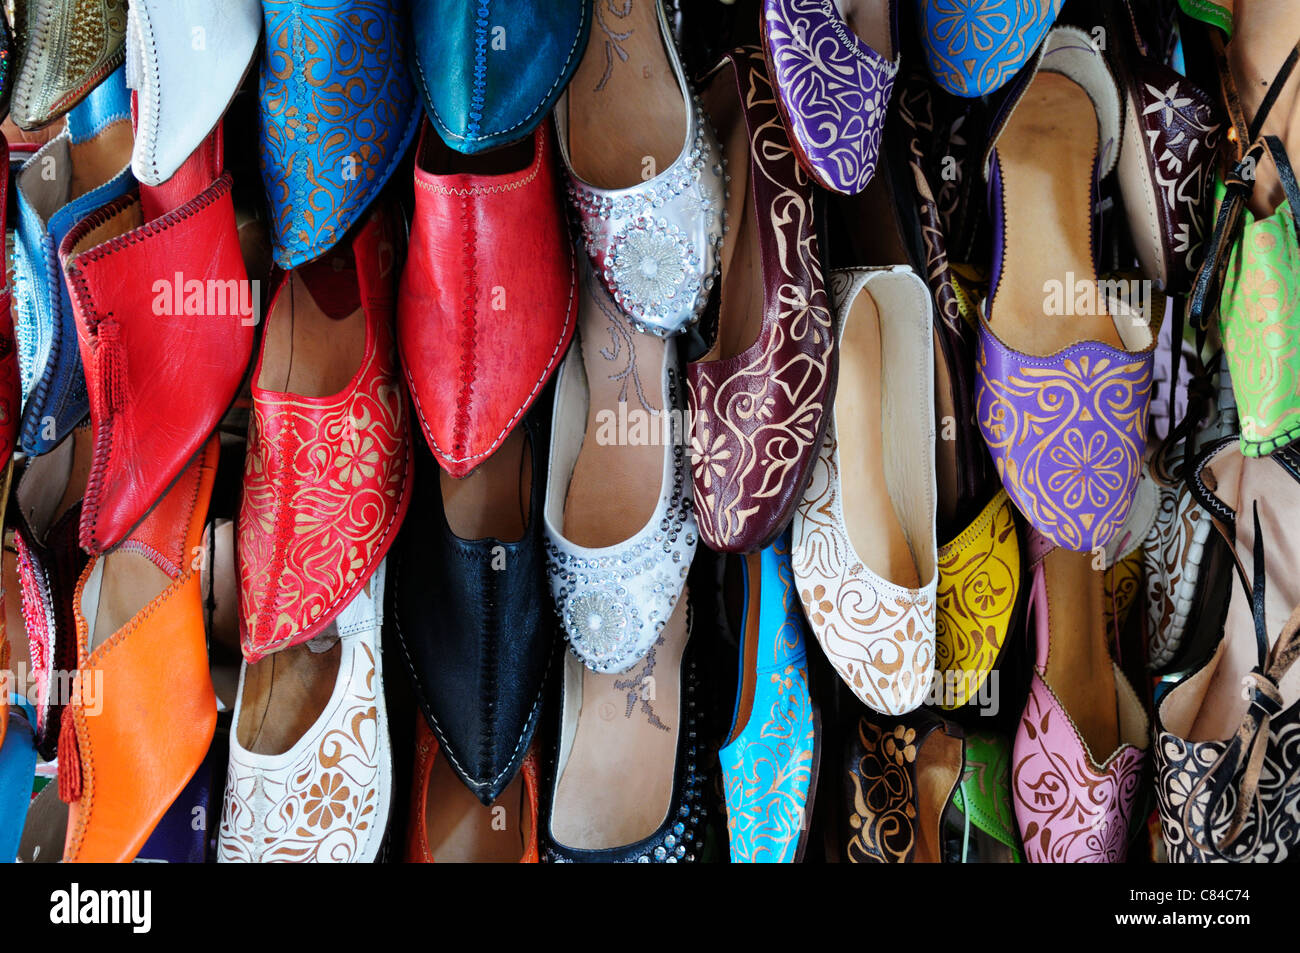 Moroccan shoes immagini e fotografie stock ad alta risoluzione - Alamy